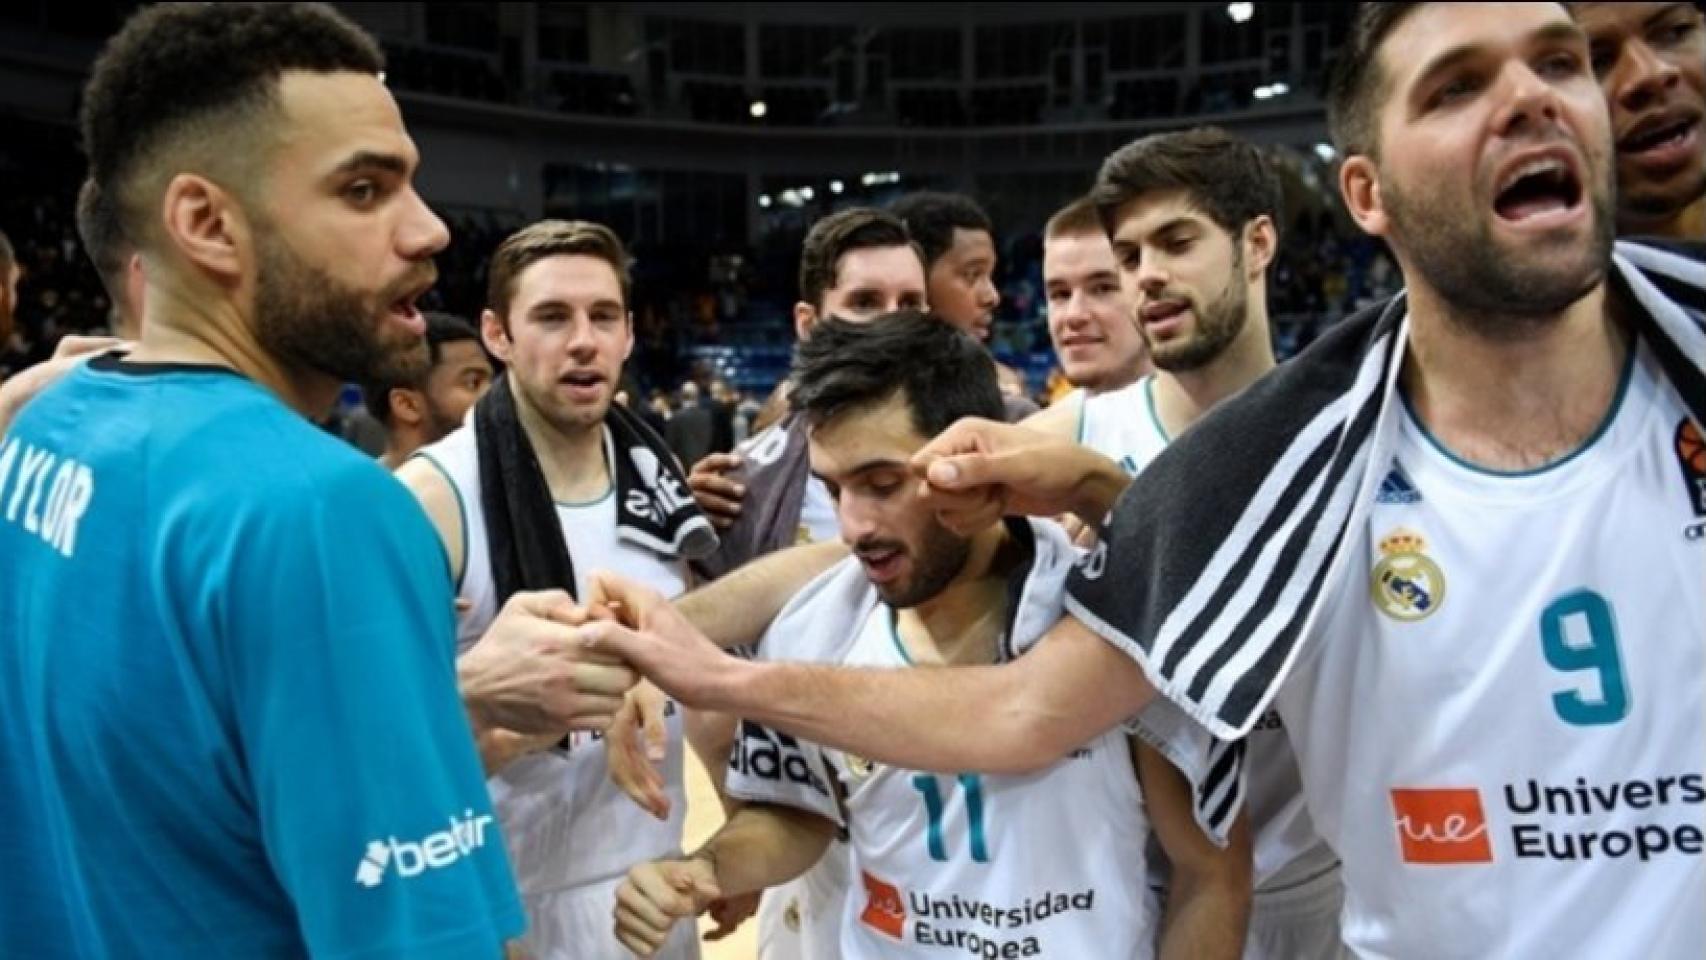 Jugadores del Real Madrid de baloncesto celebran una victoria. Foto: euroleague.net